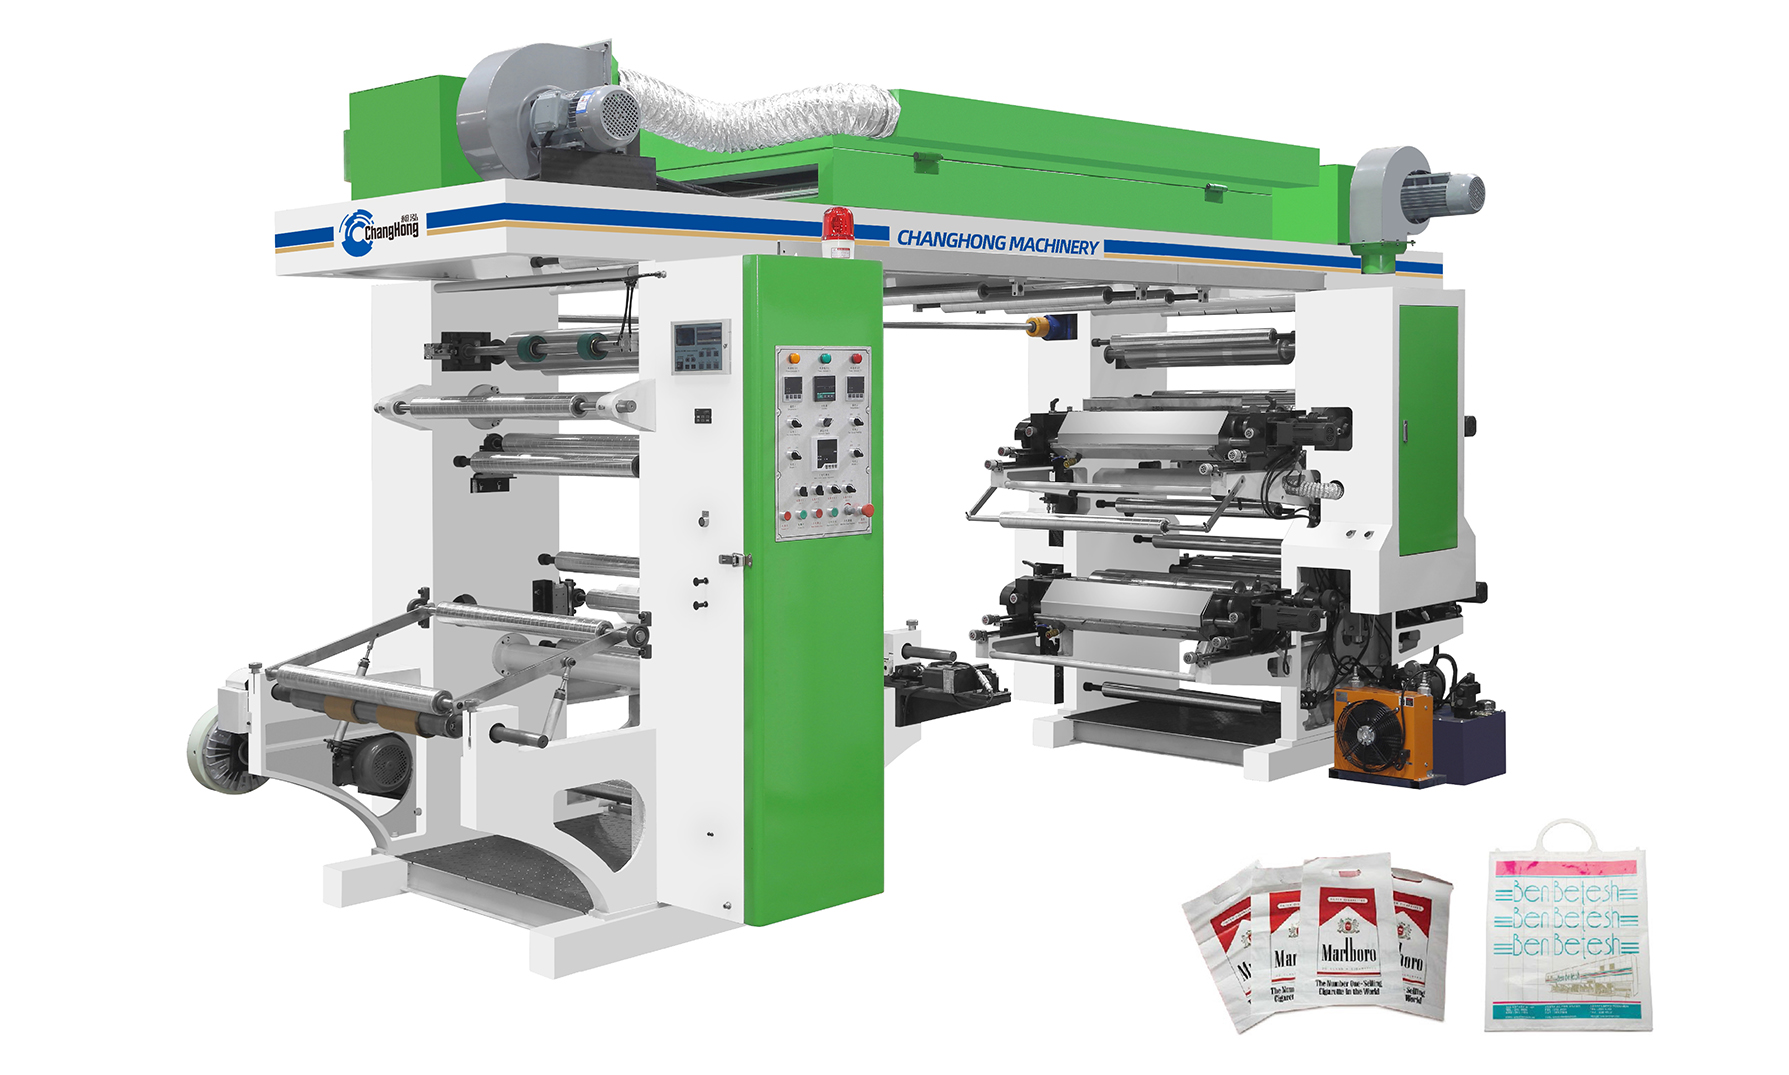 Fabrica de fabricație din China, tip stivă de 4 culori, mașină de imprimat flexografică/flexografică pentru imprimarea plasticului